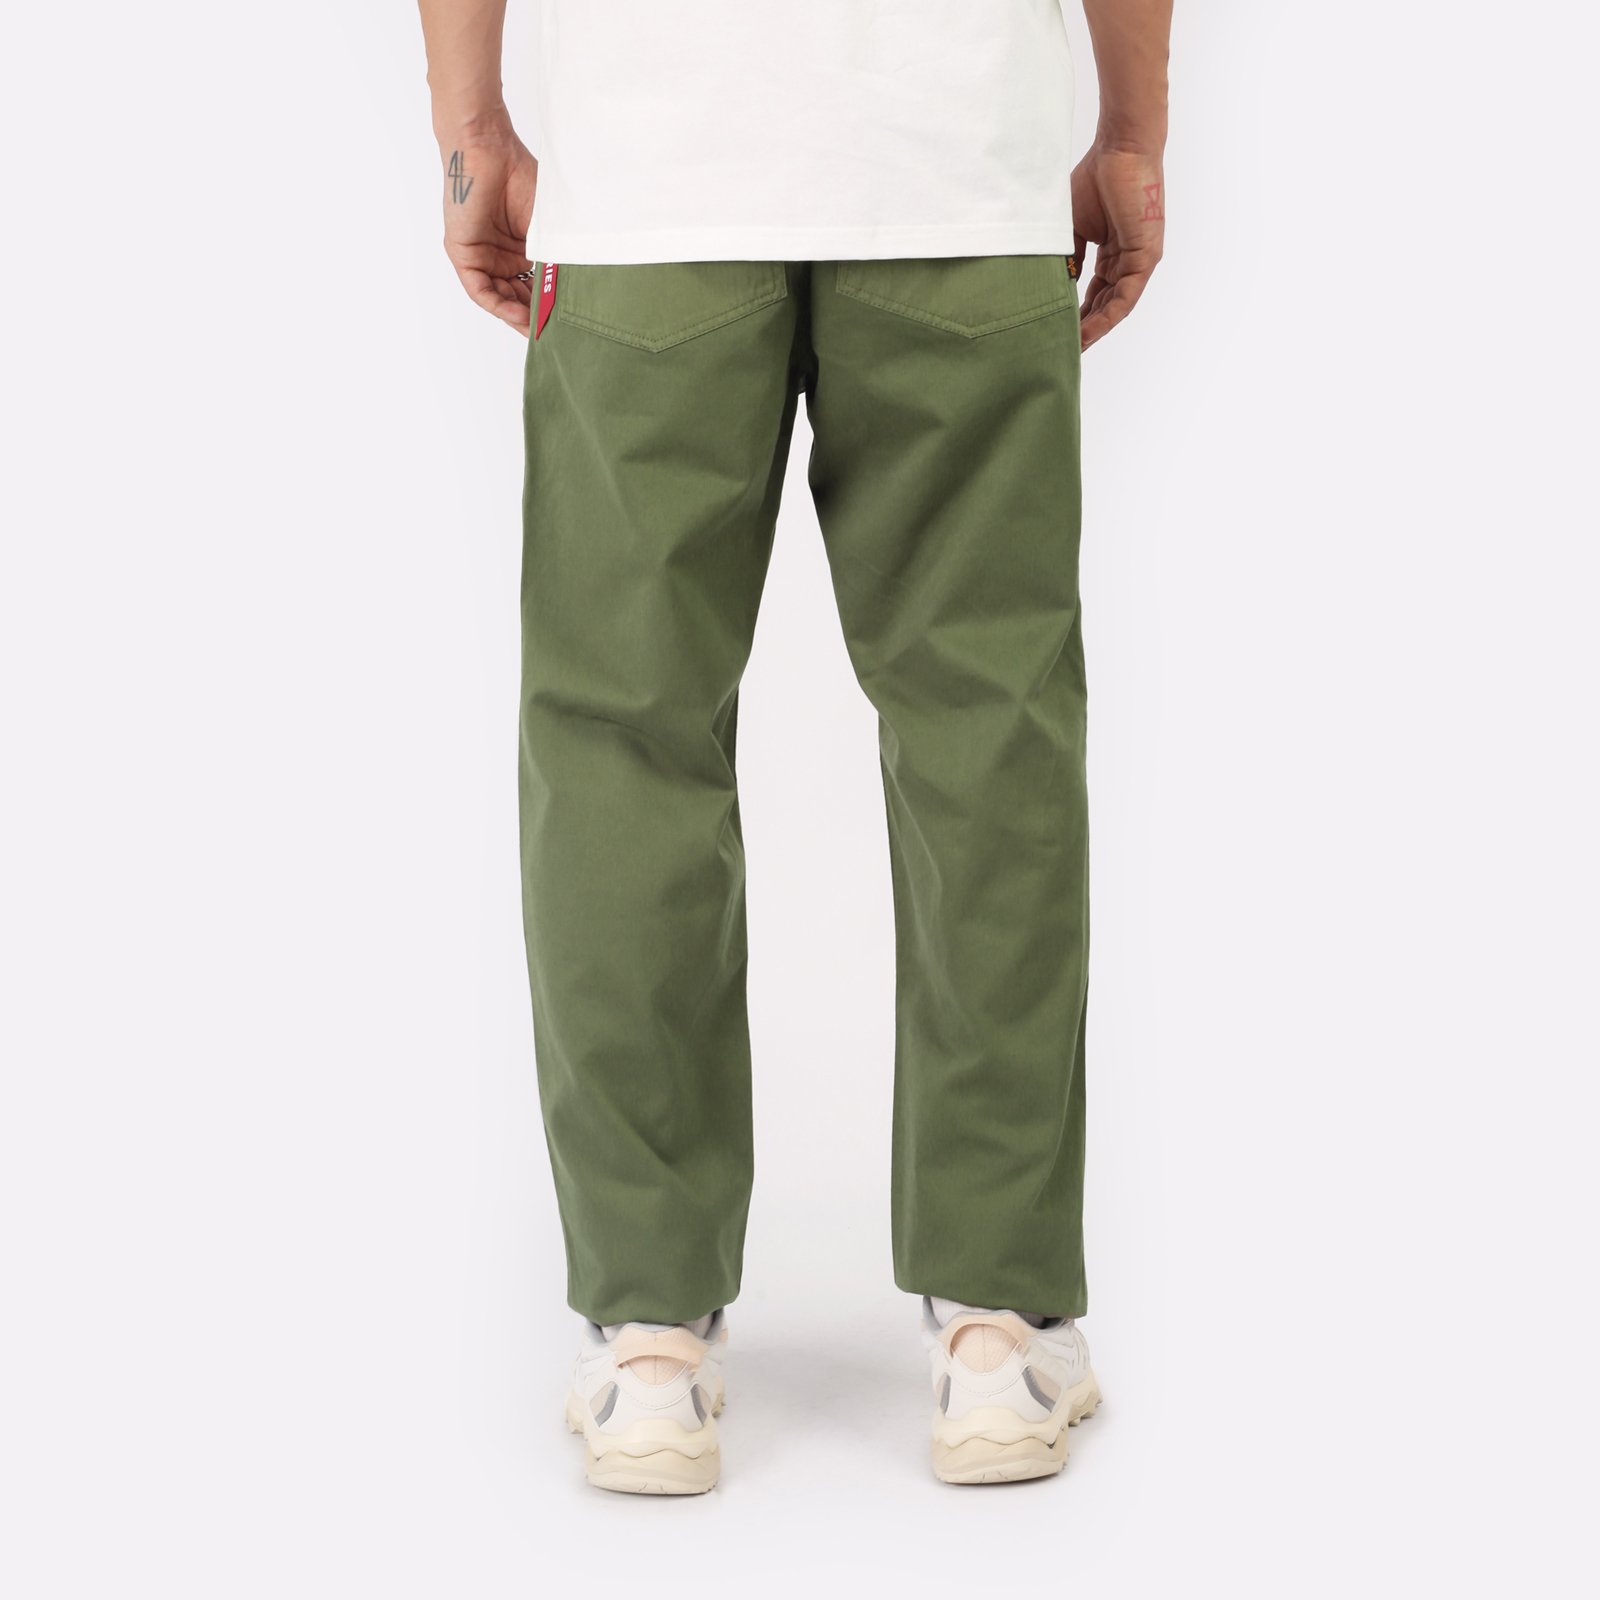 Мужские брюки Alpha Industries Fatigue Pant (MBO52500C1-OG-107-green)  - цена, описание, фото 2